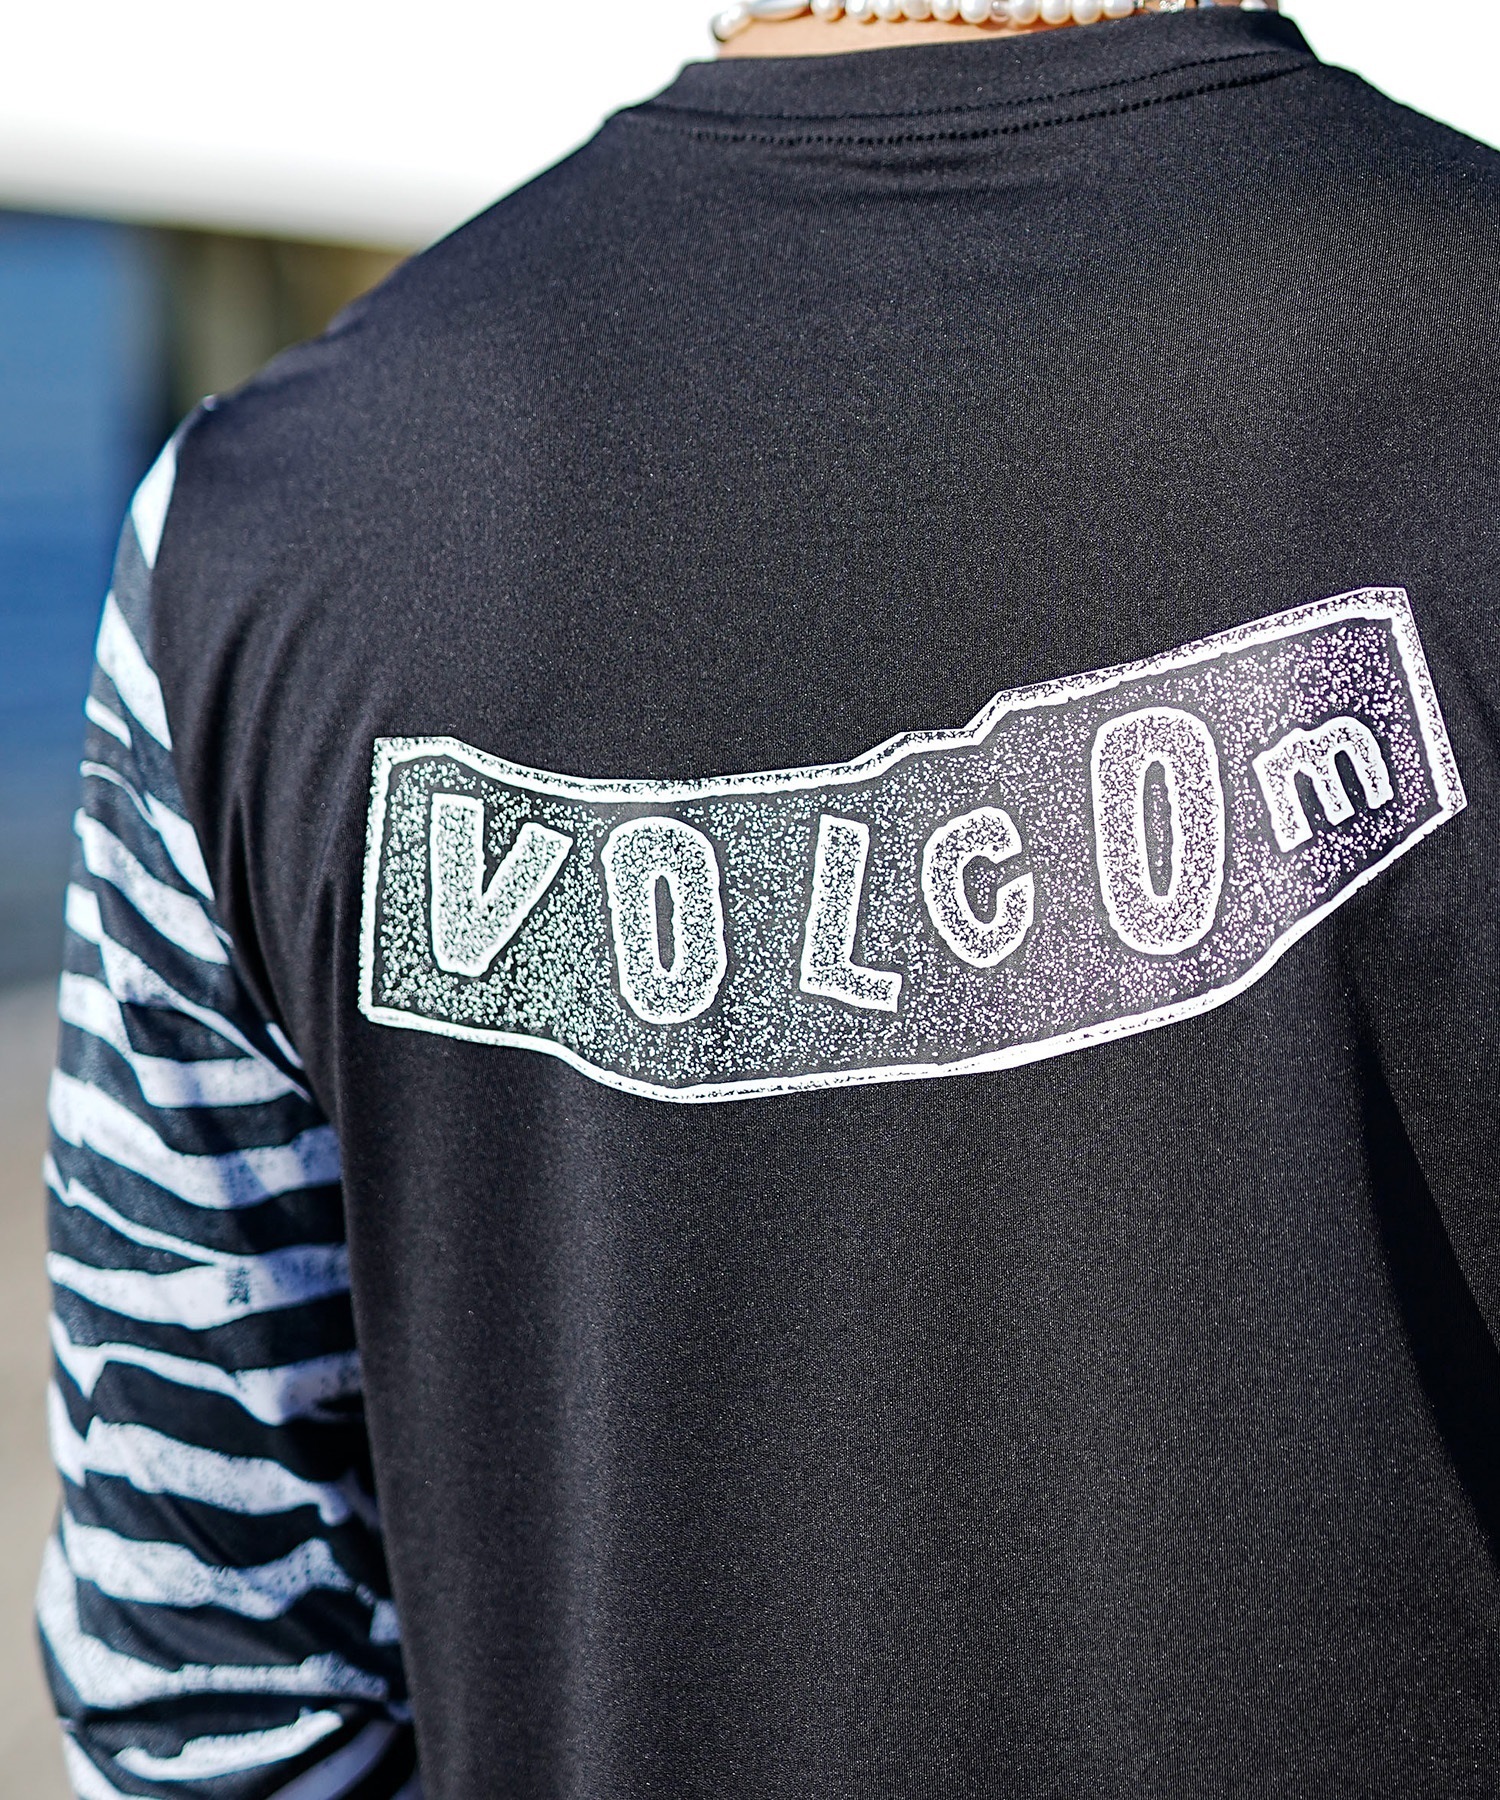 【マトメガイ対象】VOLCOM ボルコム メンズ ラッシュガード Tシャツ 長袖 水着 UVカット バックプリント A9312404(WHT-S)